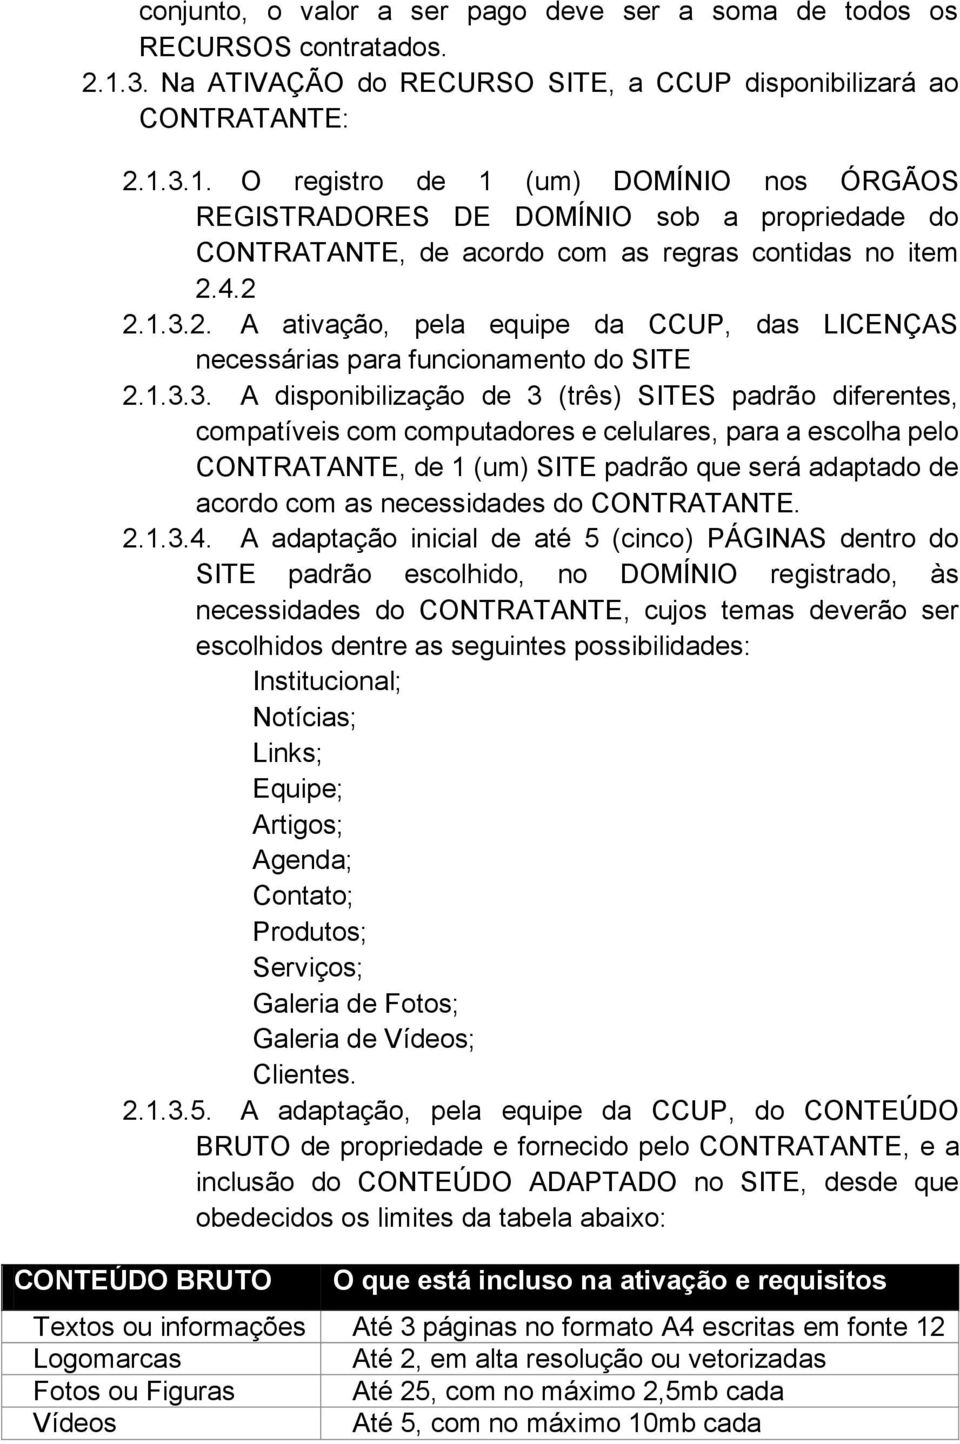 3.1. O registro de 1 (um) DOMÍNIO nos ÓRGÃOS REGISTRADORES DE DOMÍNIO sob a propriedade do CONTRATANTE, de acordo com as regras contidas no item 2.